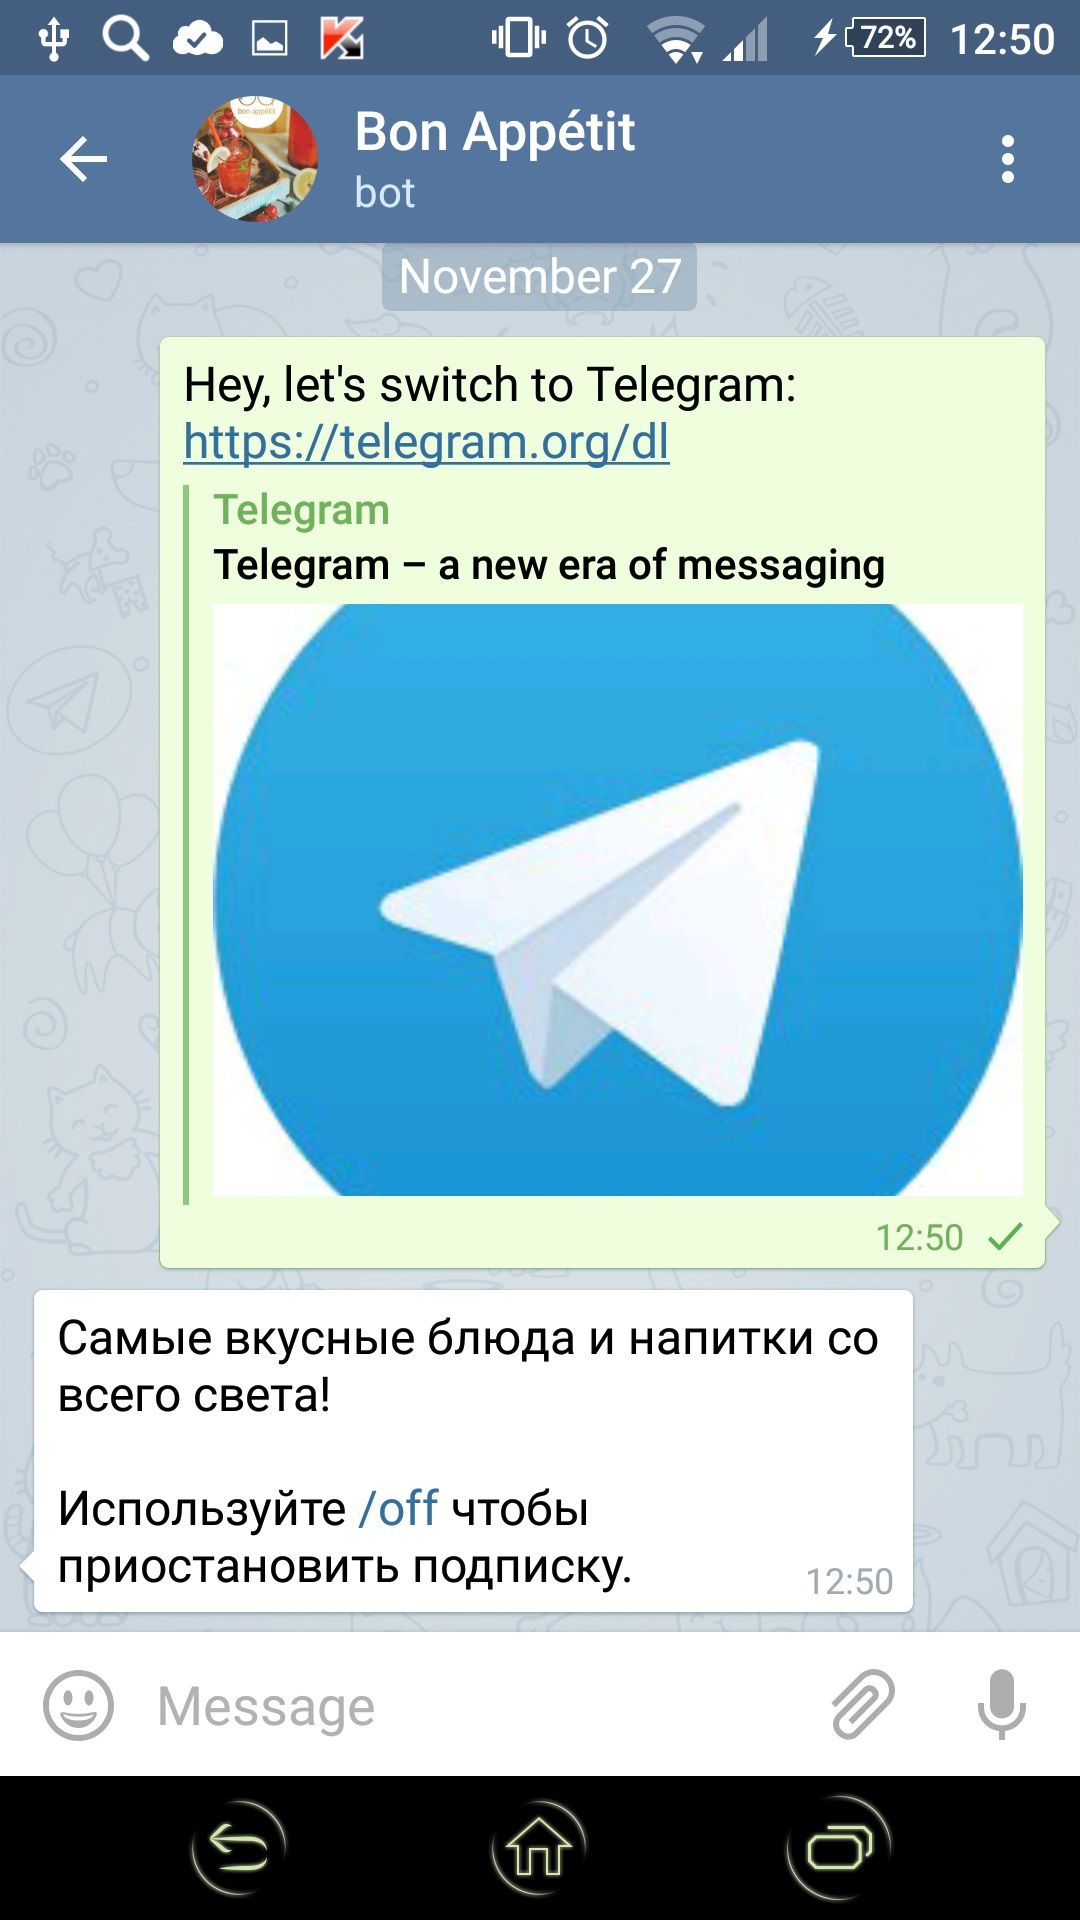 Установить приложение телеграмм бесплатно на русском языке на андроид полную версию скачать сайта фото 62